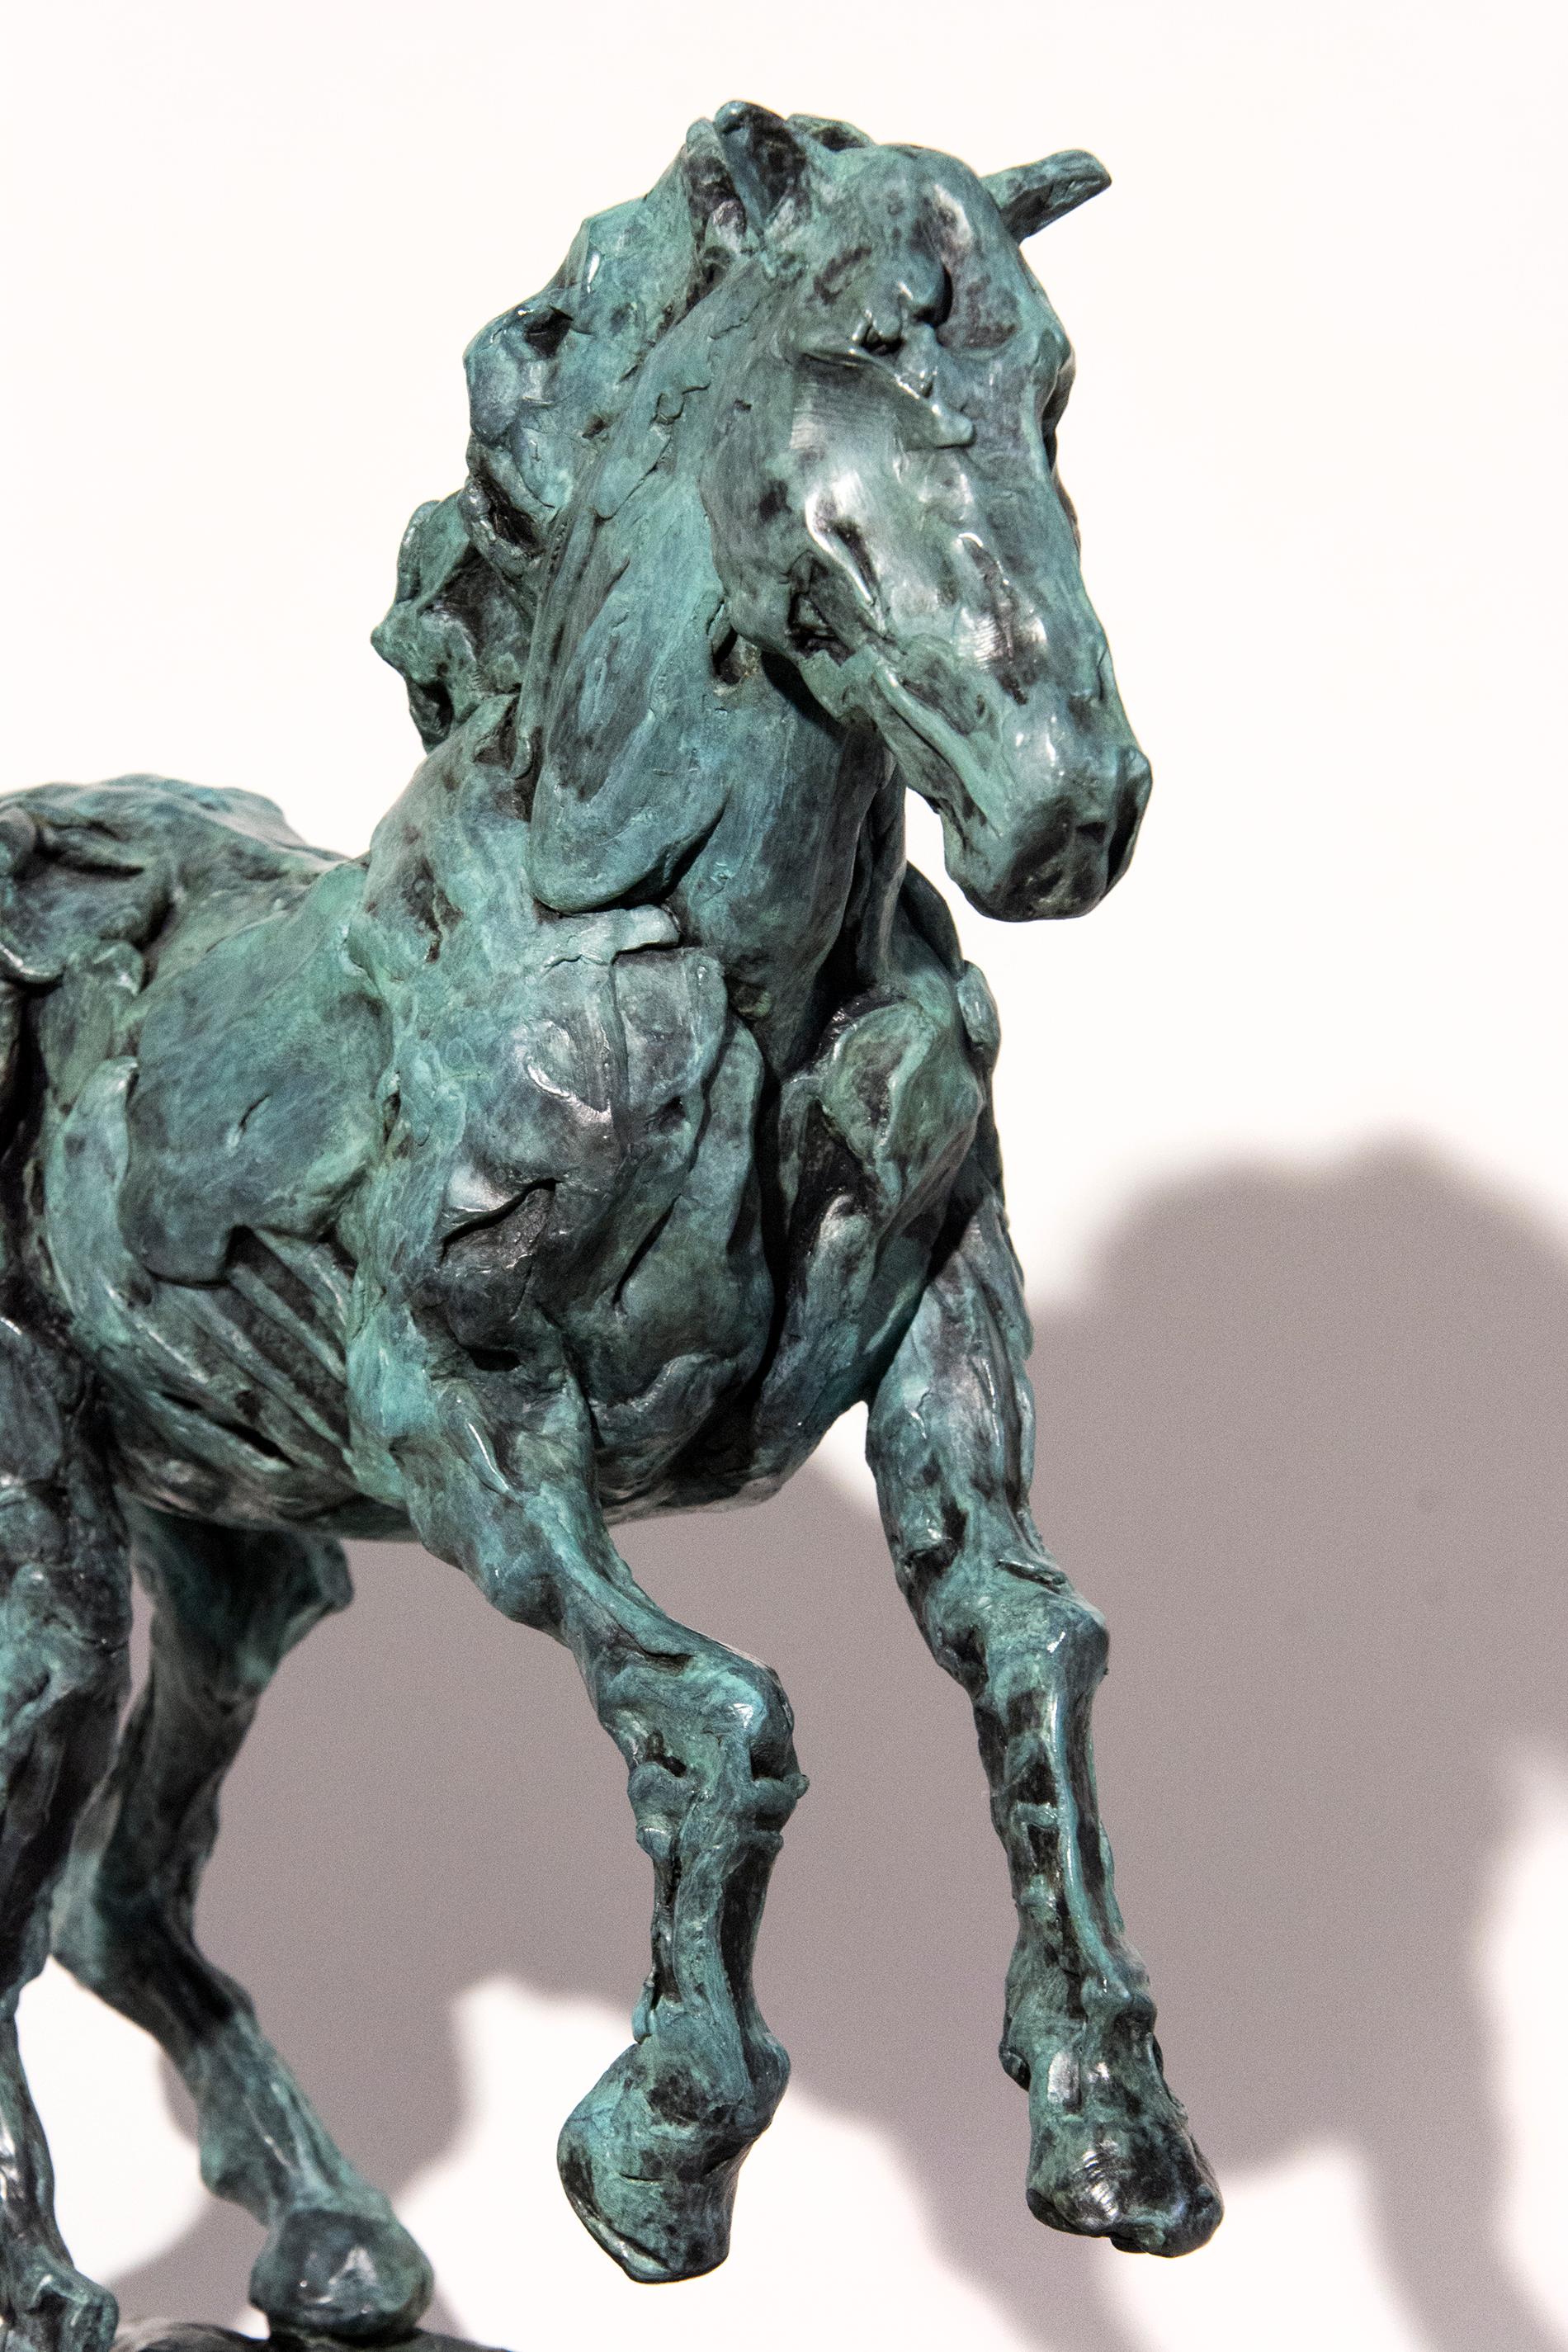 Cette statuette dynamique en bronze d'un cheval cabré est rendue dans une texture expressive avec une élégante patine verte. Le sculpteur Richard Tosczak commence nombre de ses sculptures par des études rapides à la plume et à l'encre qui évoluent